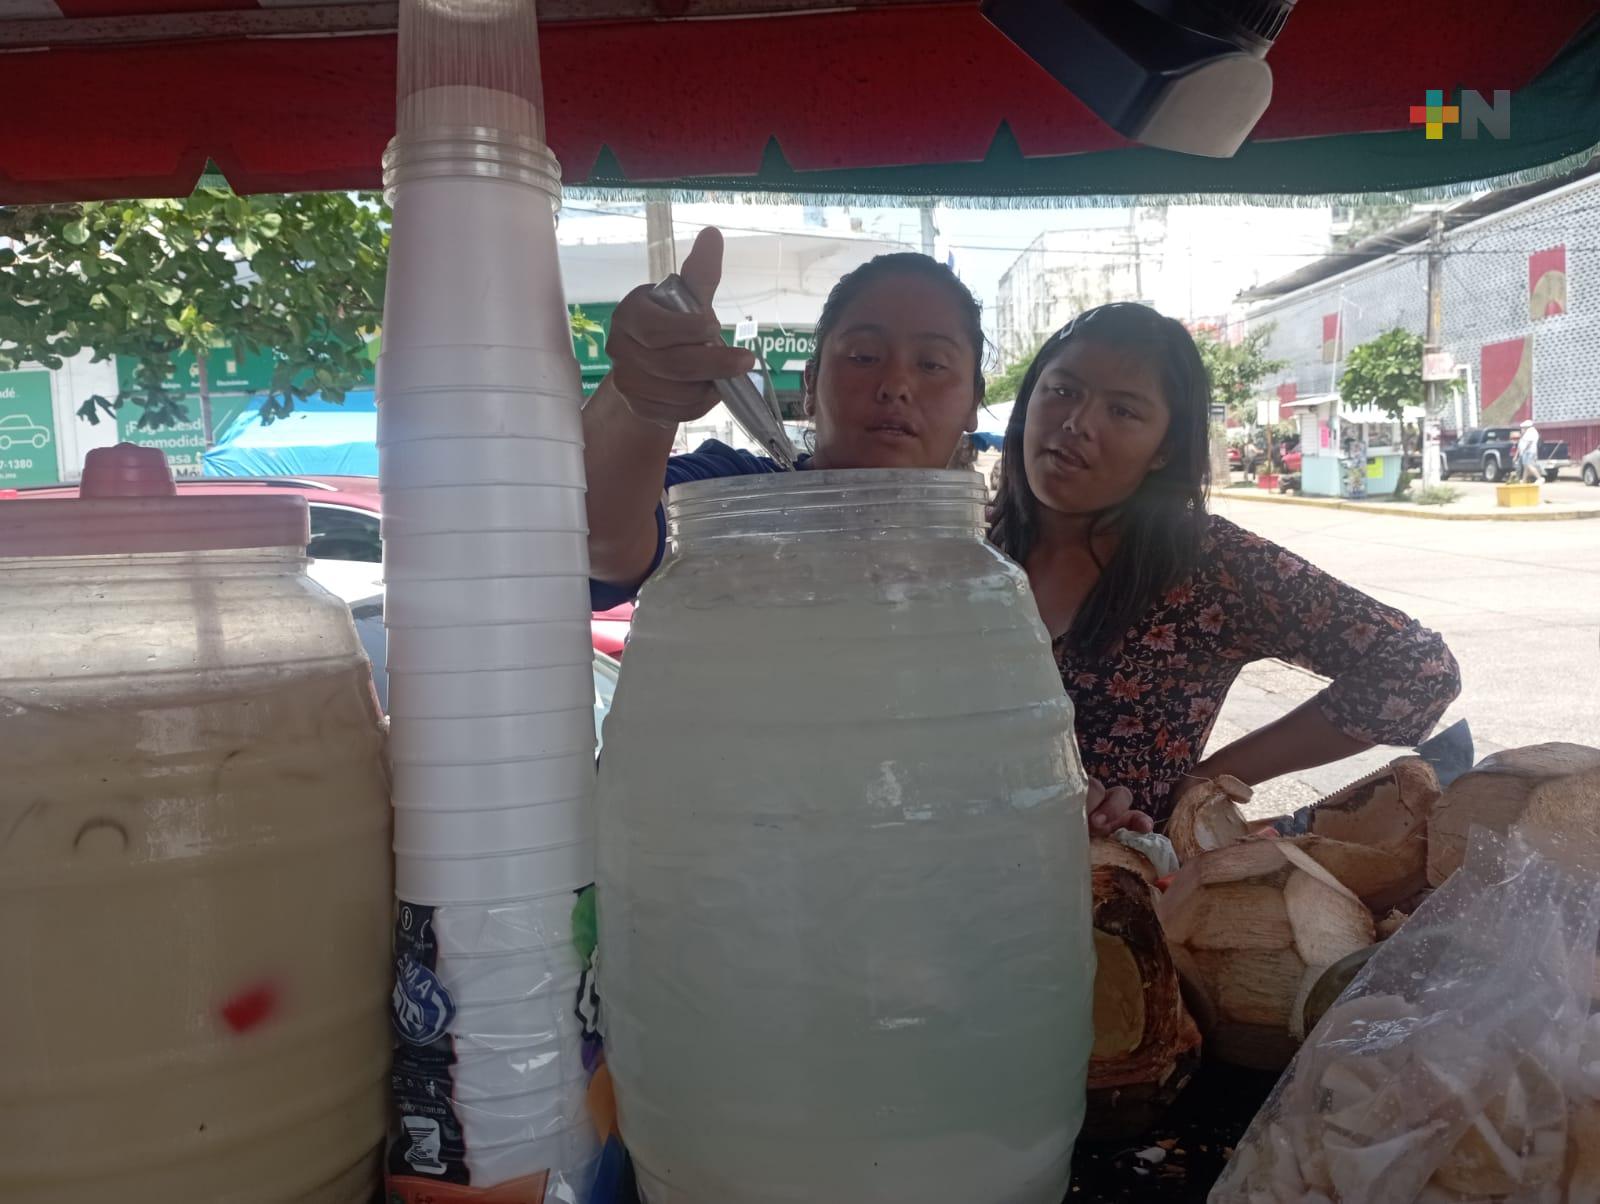 Crece notablemente en Coatza la venta de aguas frescas debido al calor